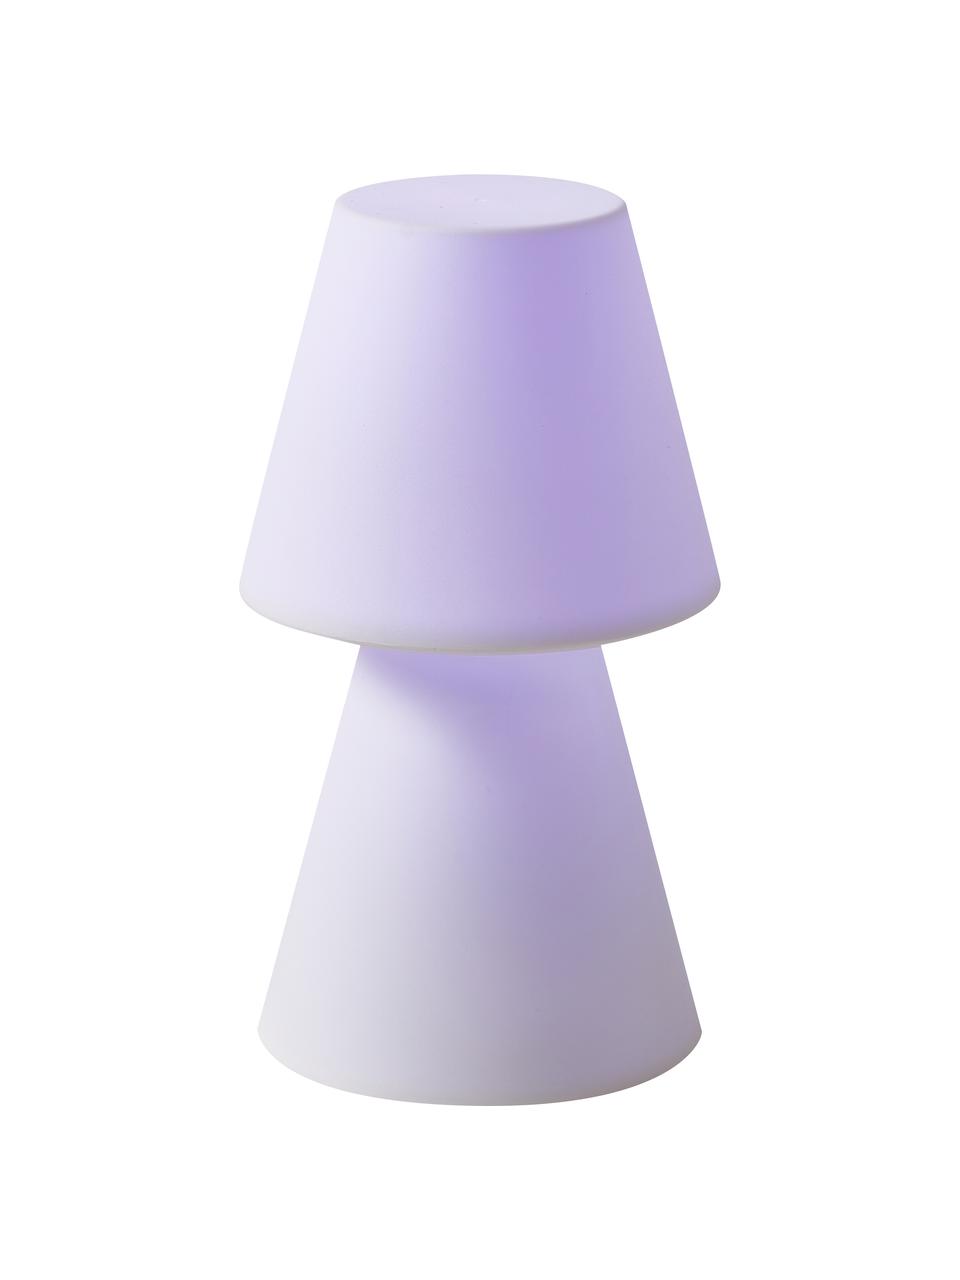 Mobilna lampa stołowa LED z funkcją przyciemniania Lola, Biały, Ø 11 x W 20 cm